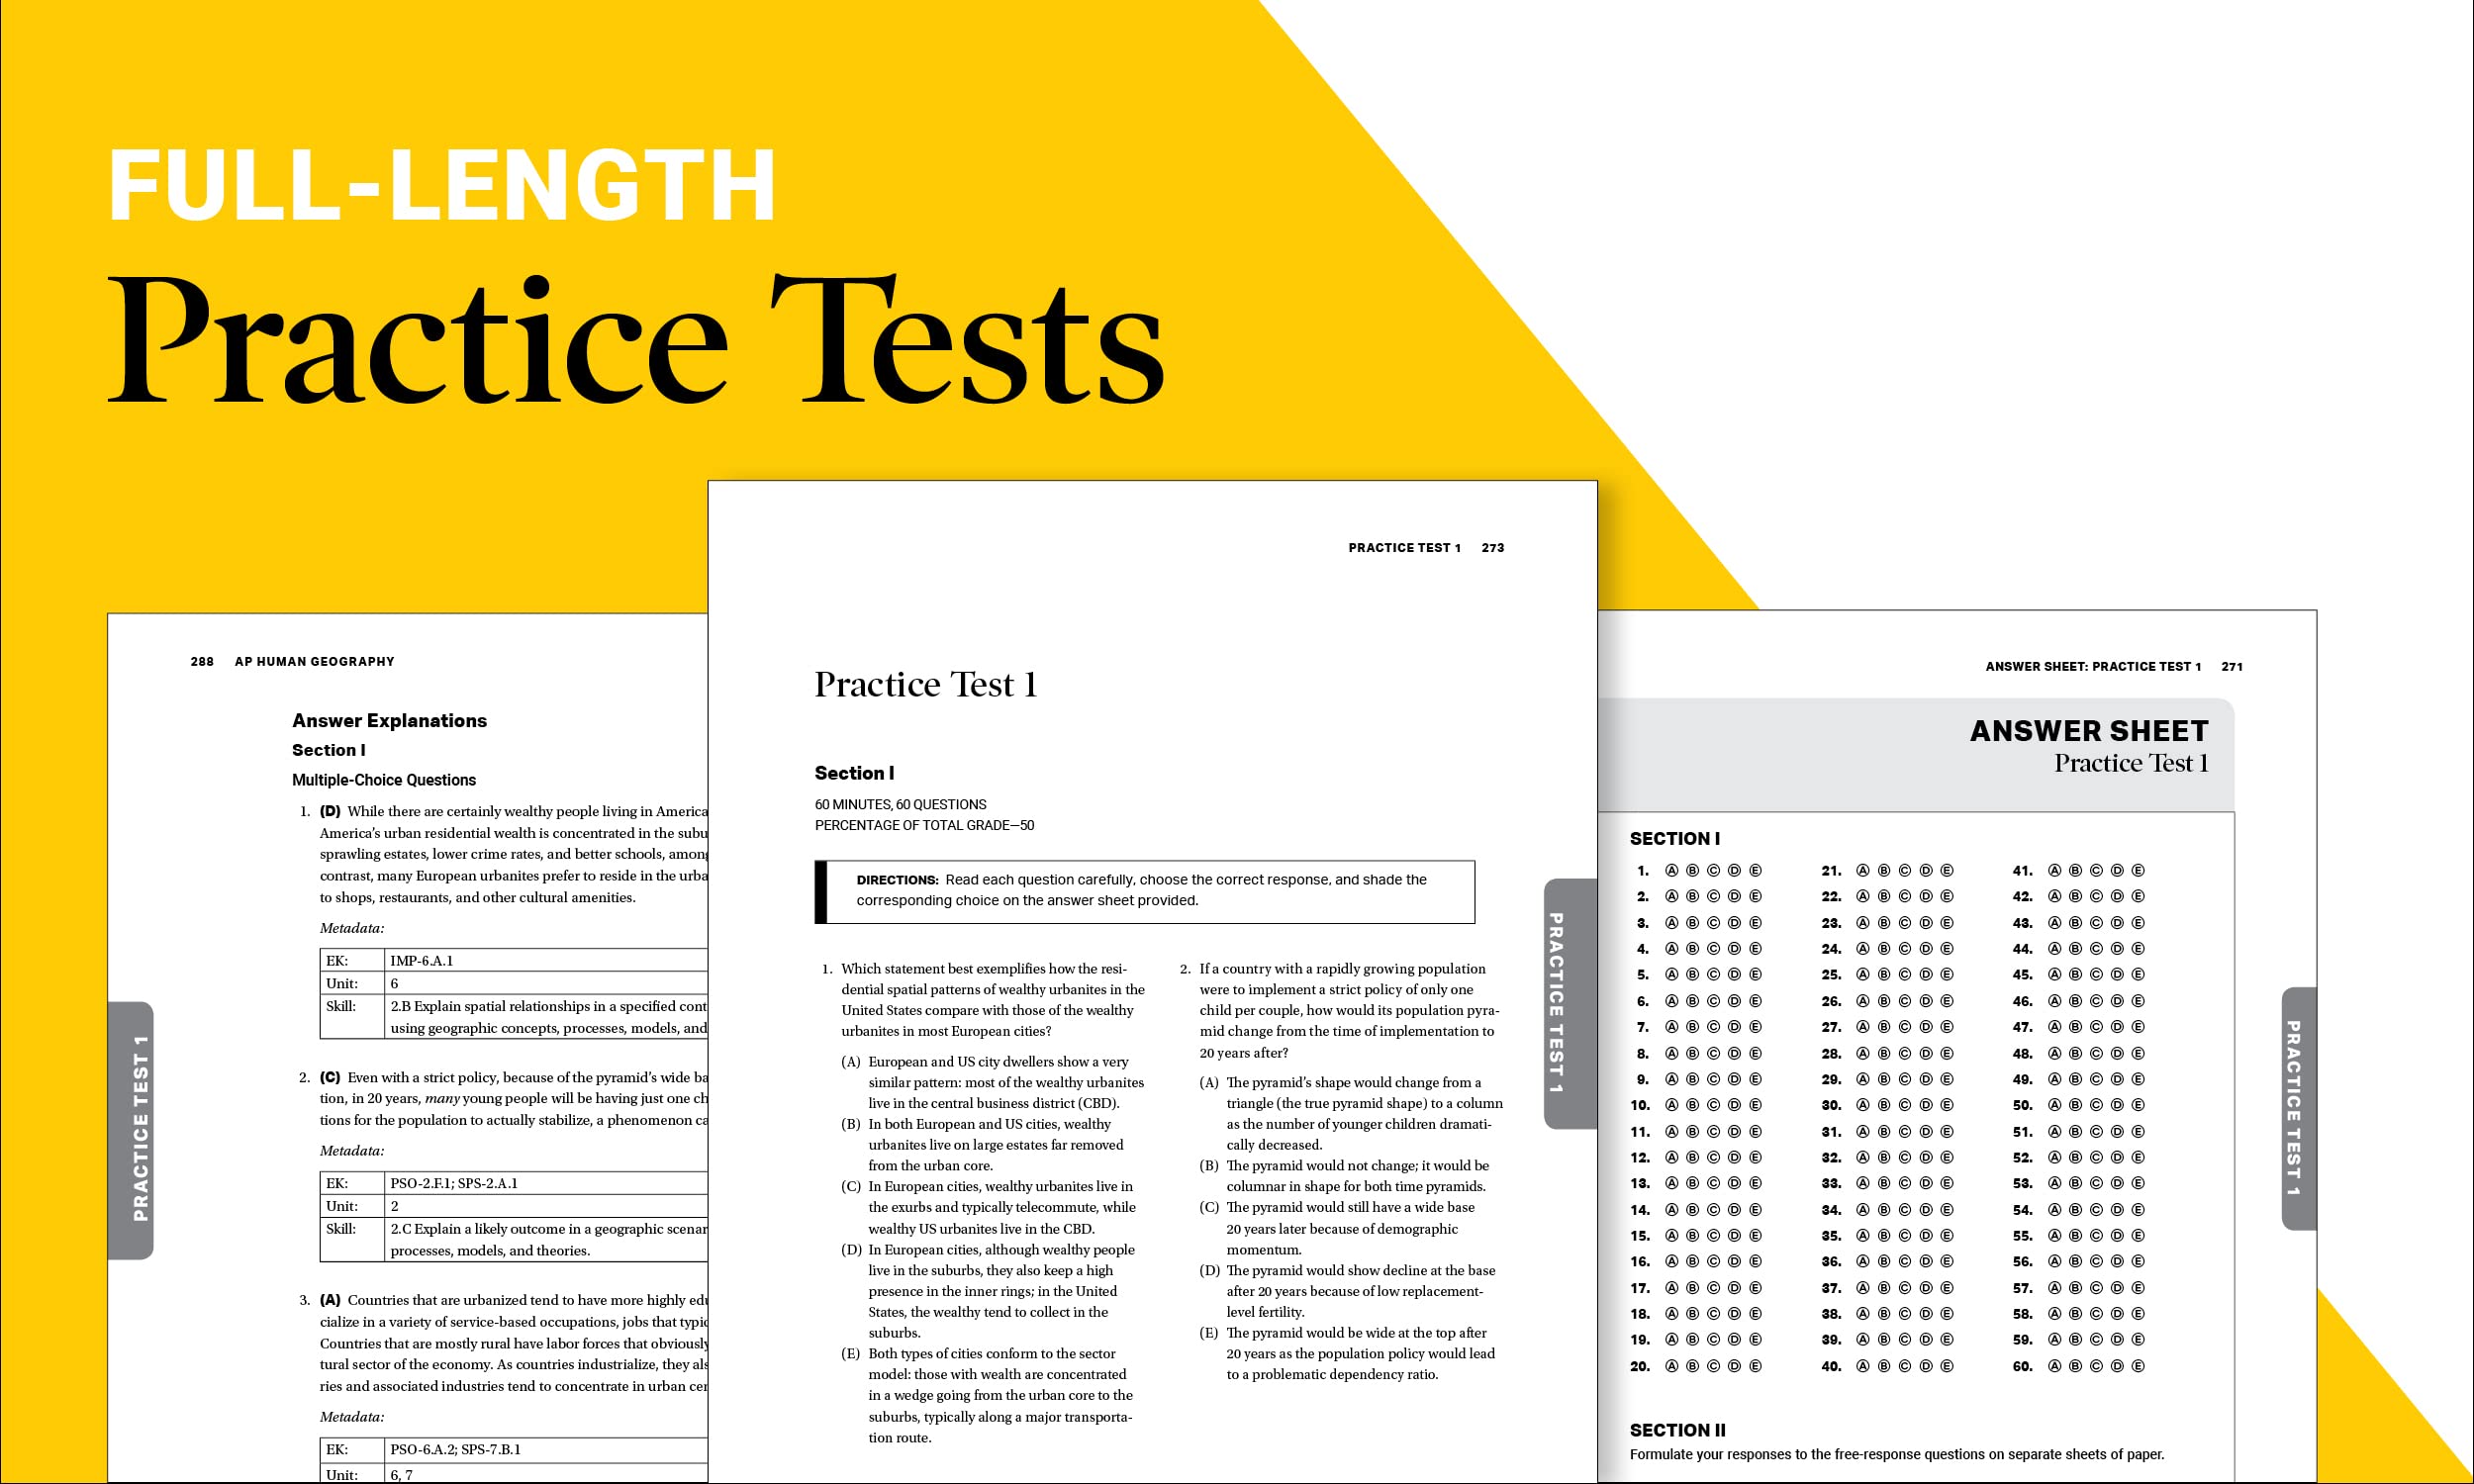 AP Precalculus Premium, 2024: 3 Practice Tests + Comprehensive Review + Online Practice (Barron's AP)